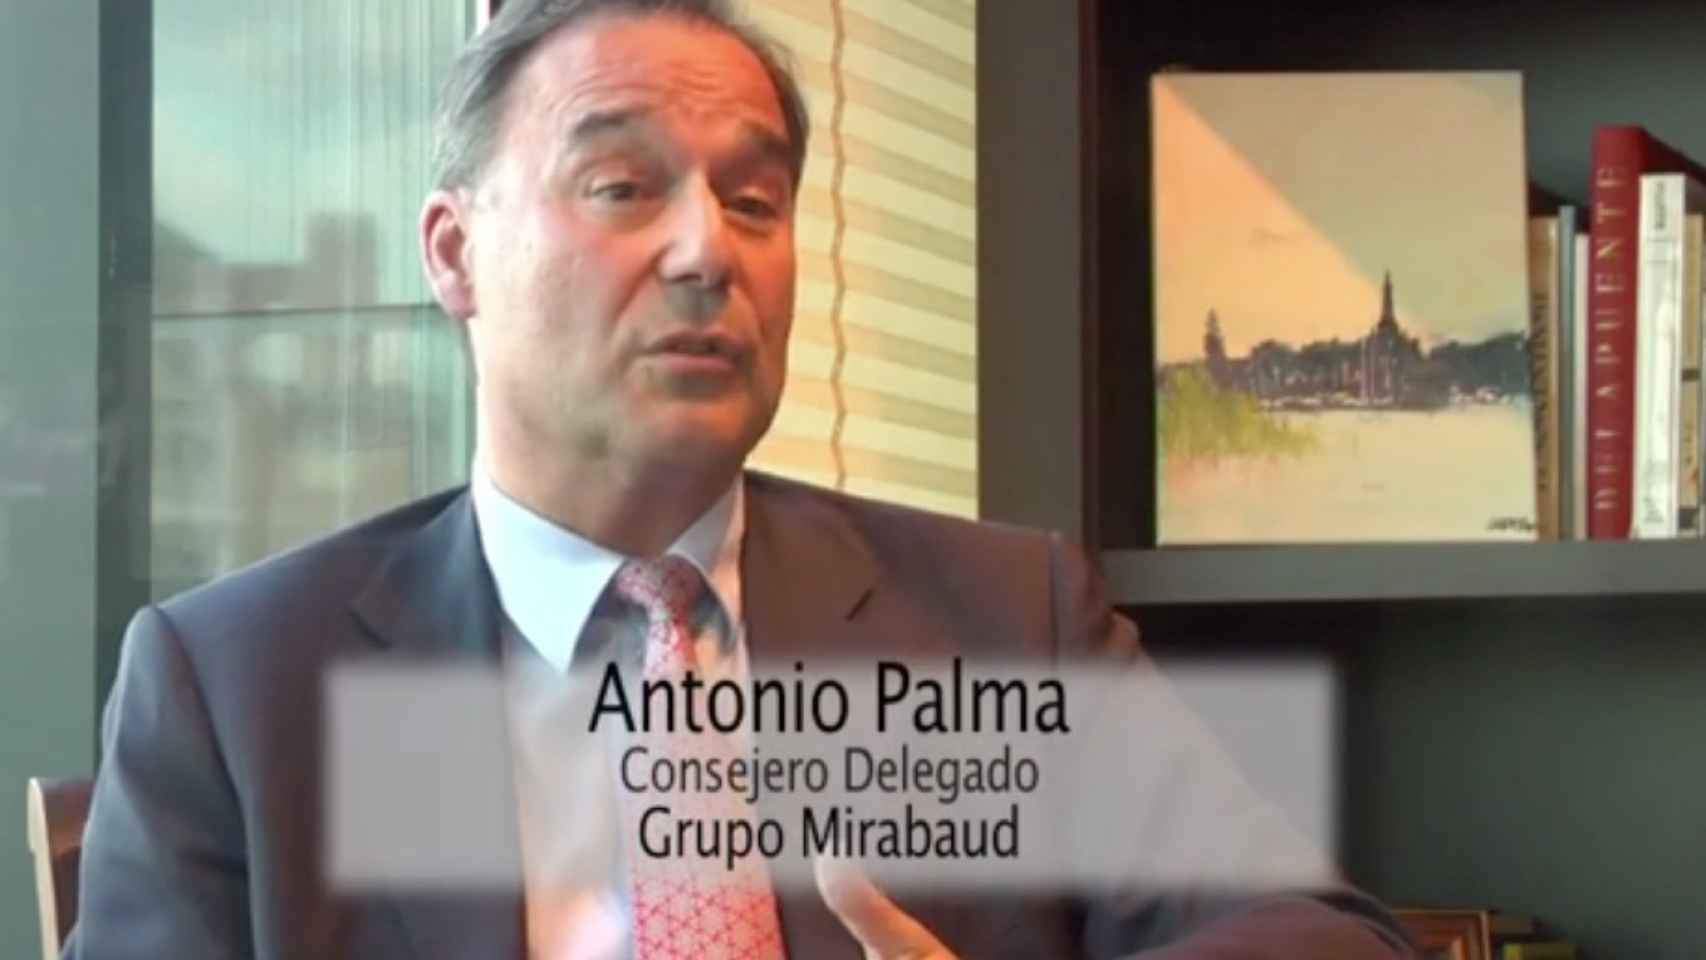 Antonio Palma, consejero delegado del Grupo Mirabaud.